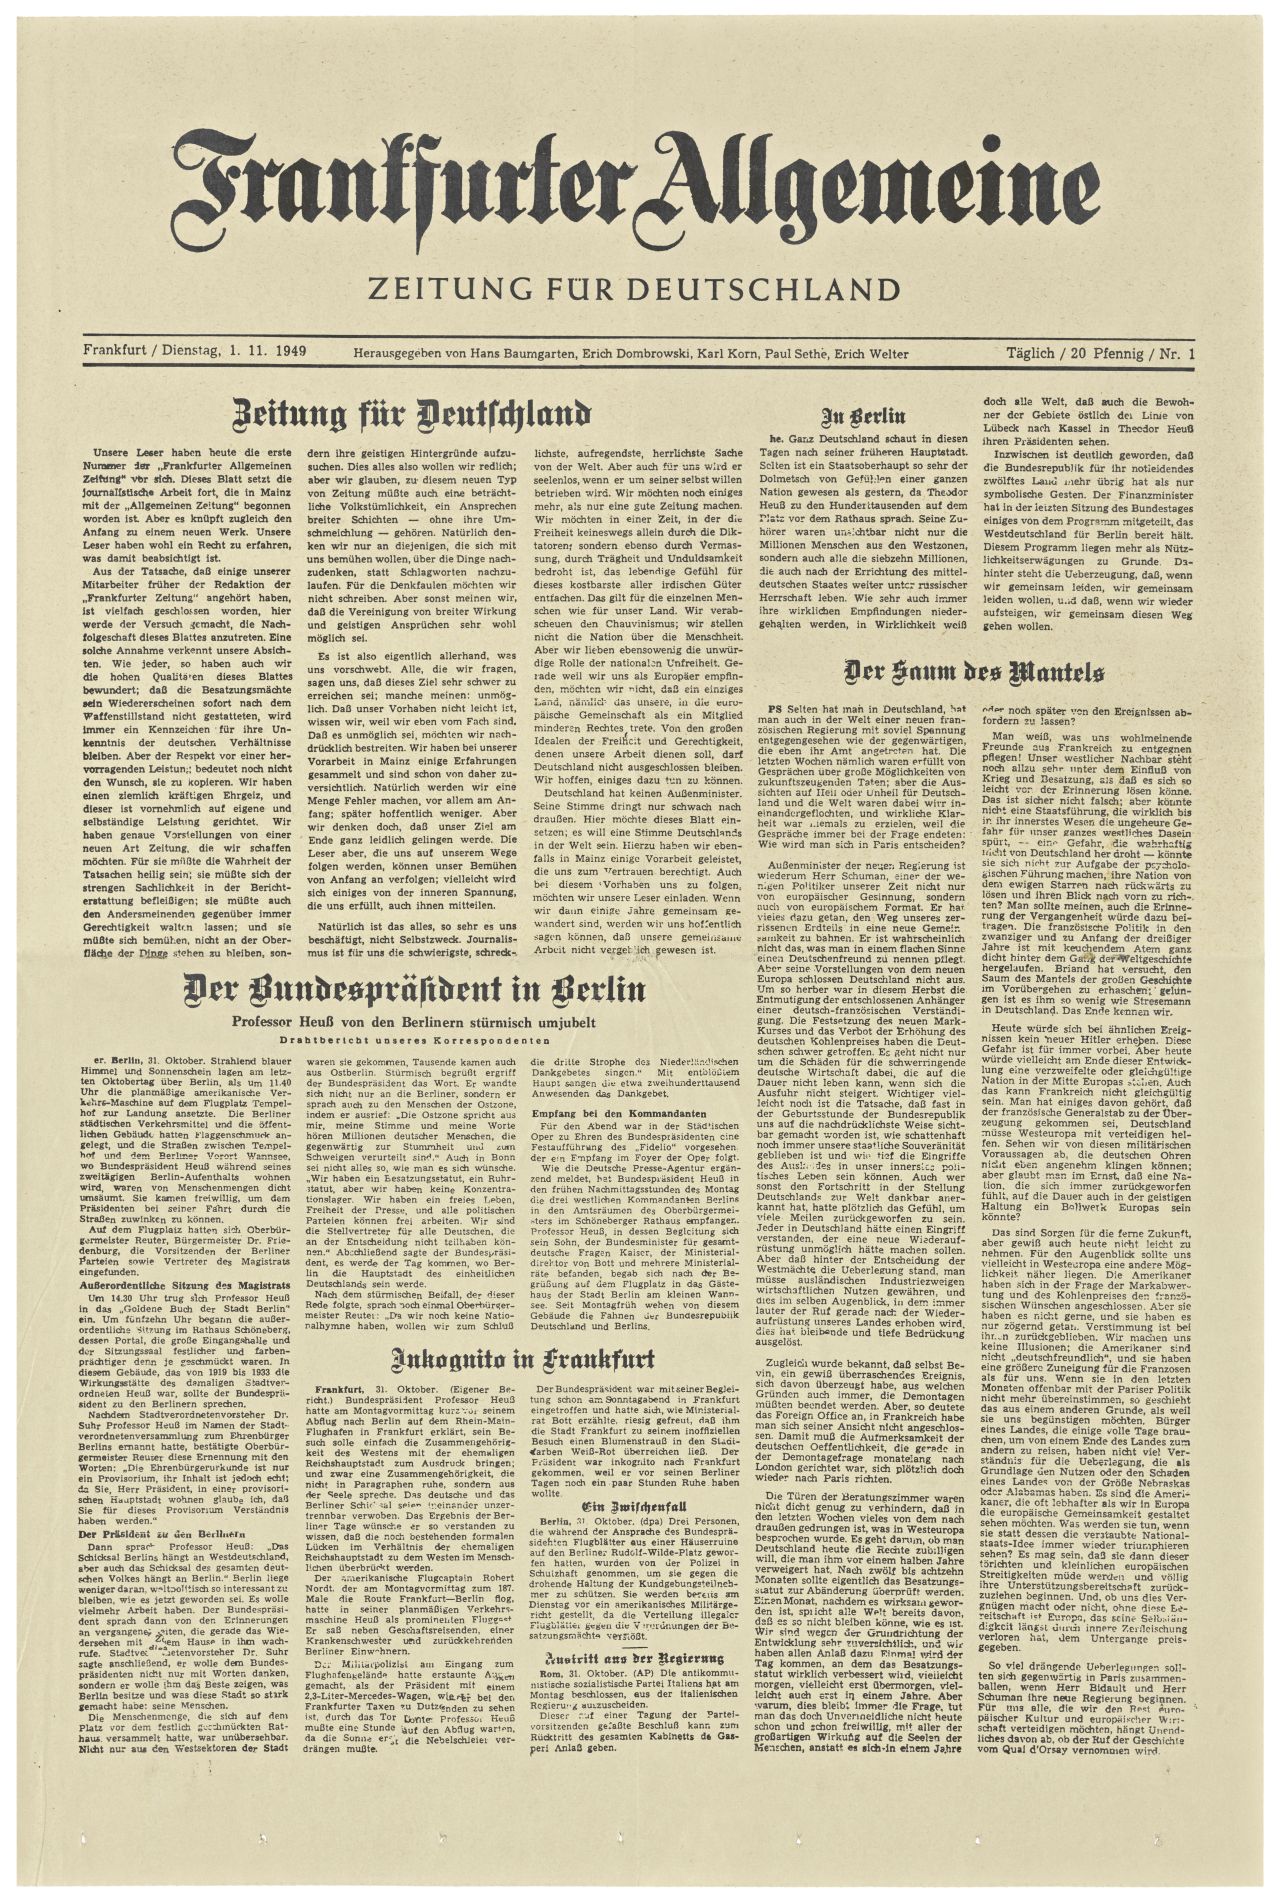 Ausgabe der ersten Frankfurter Allgemeine. Zeitung für Deutschland; Hauptschlagzeilen auf der Titelseite: 